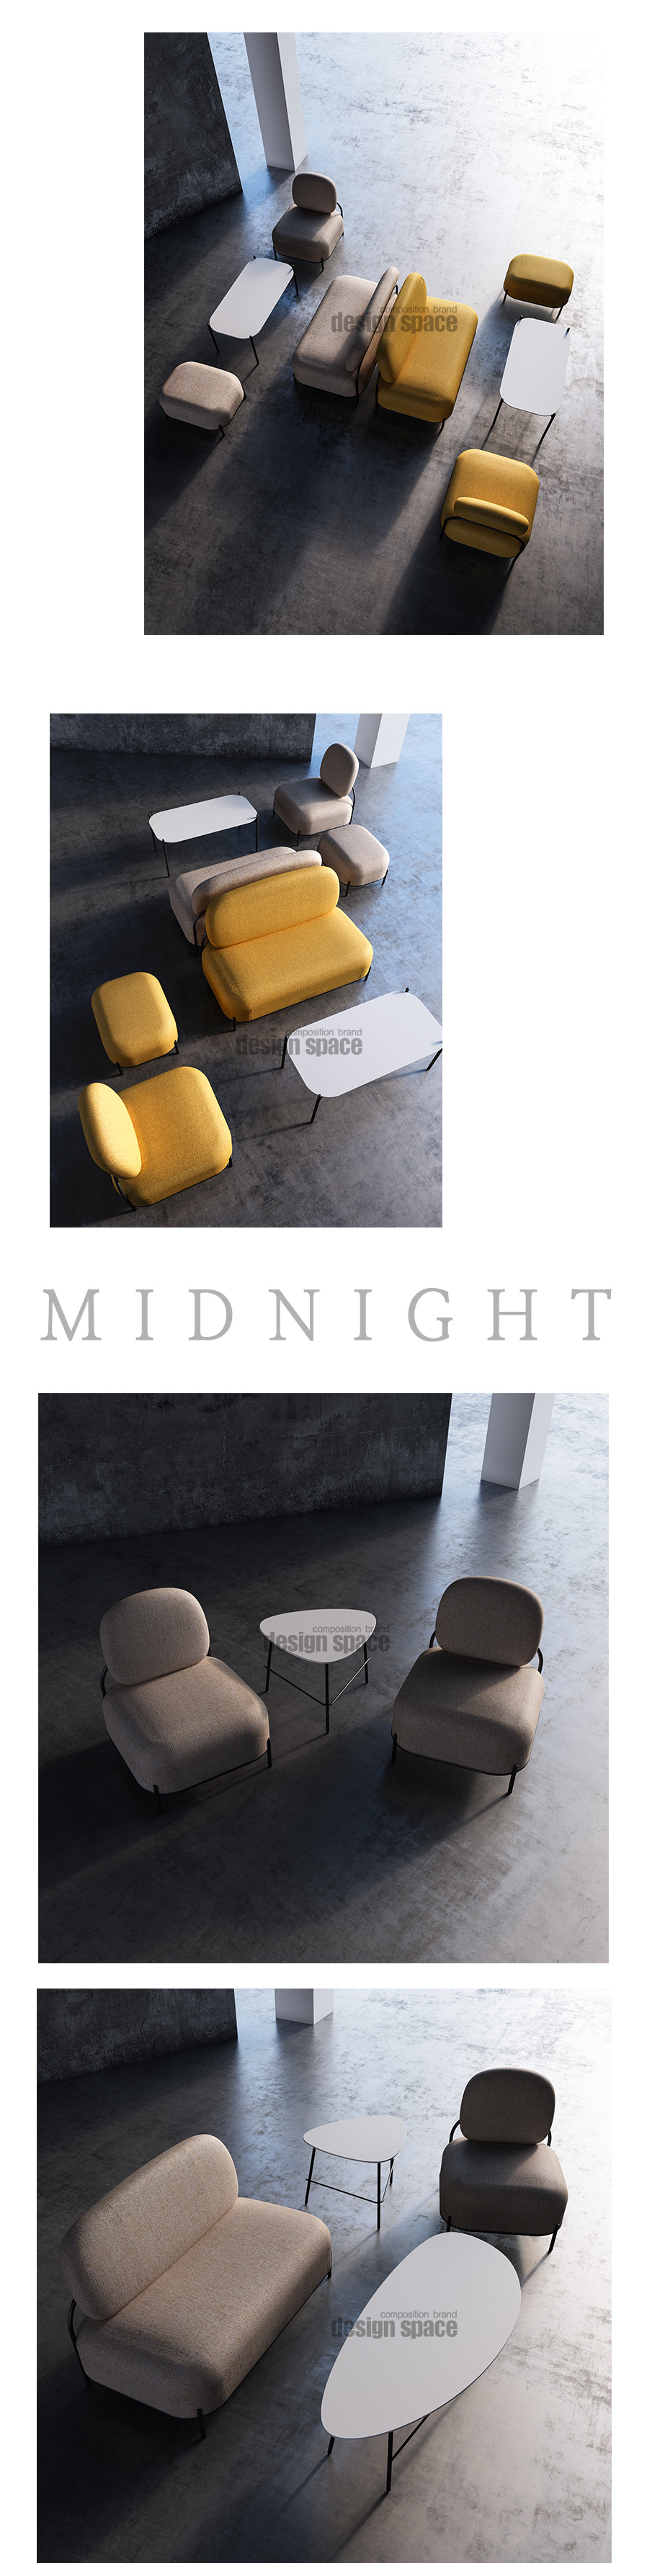 midnight-stool_03.jpg